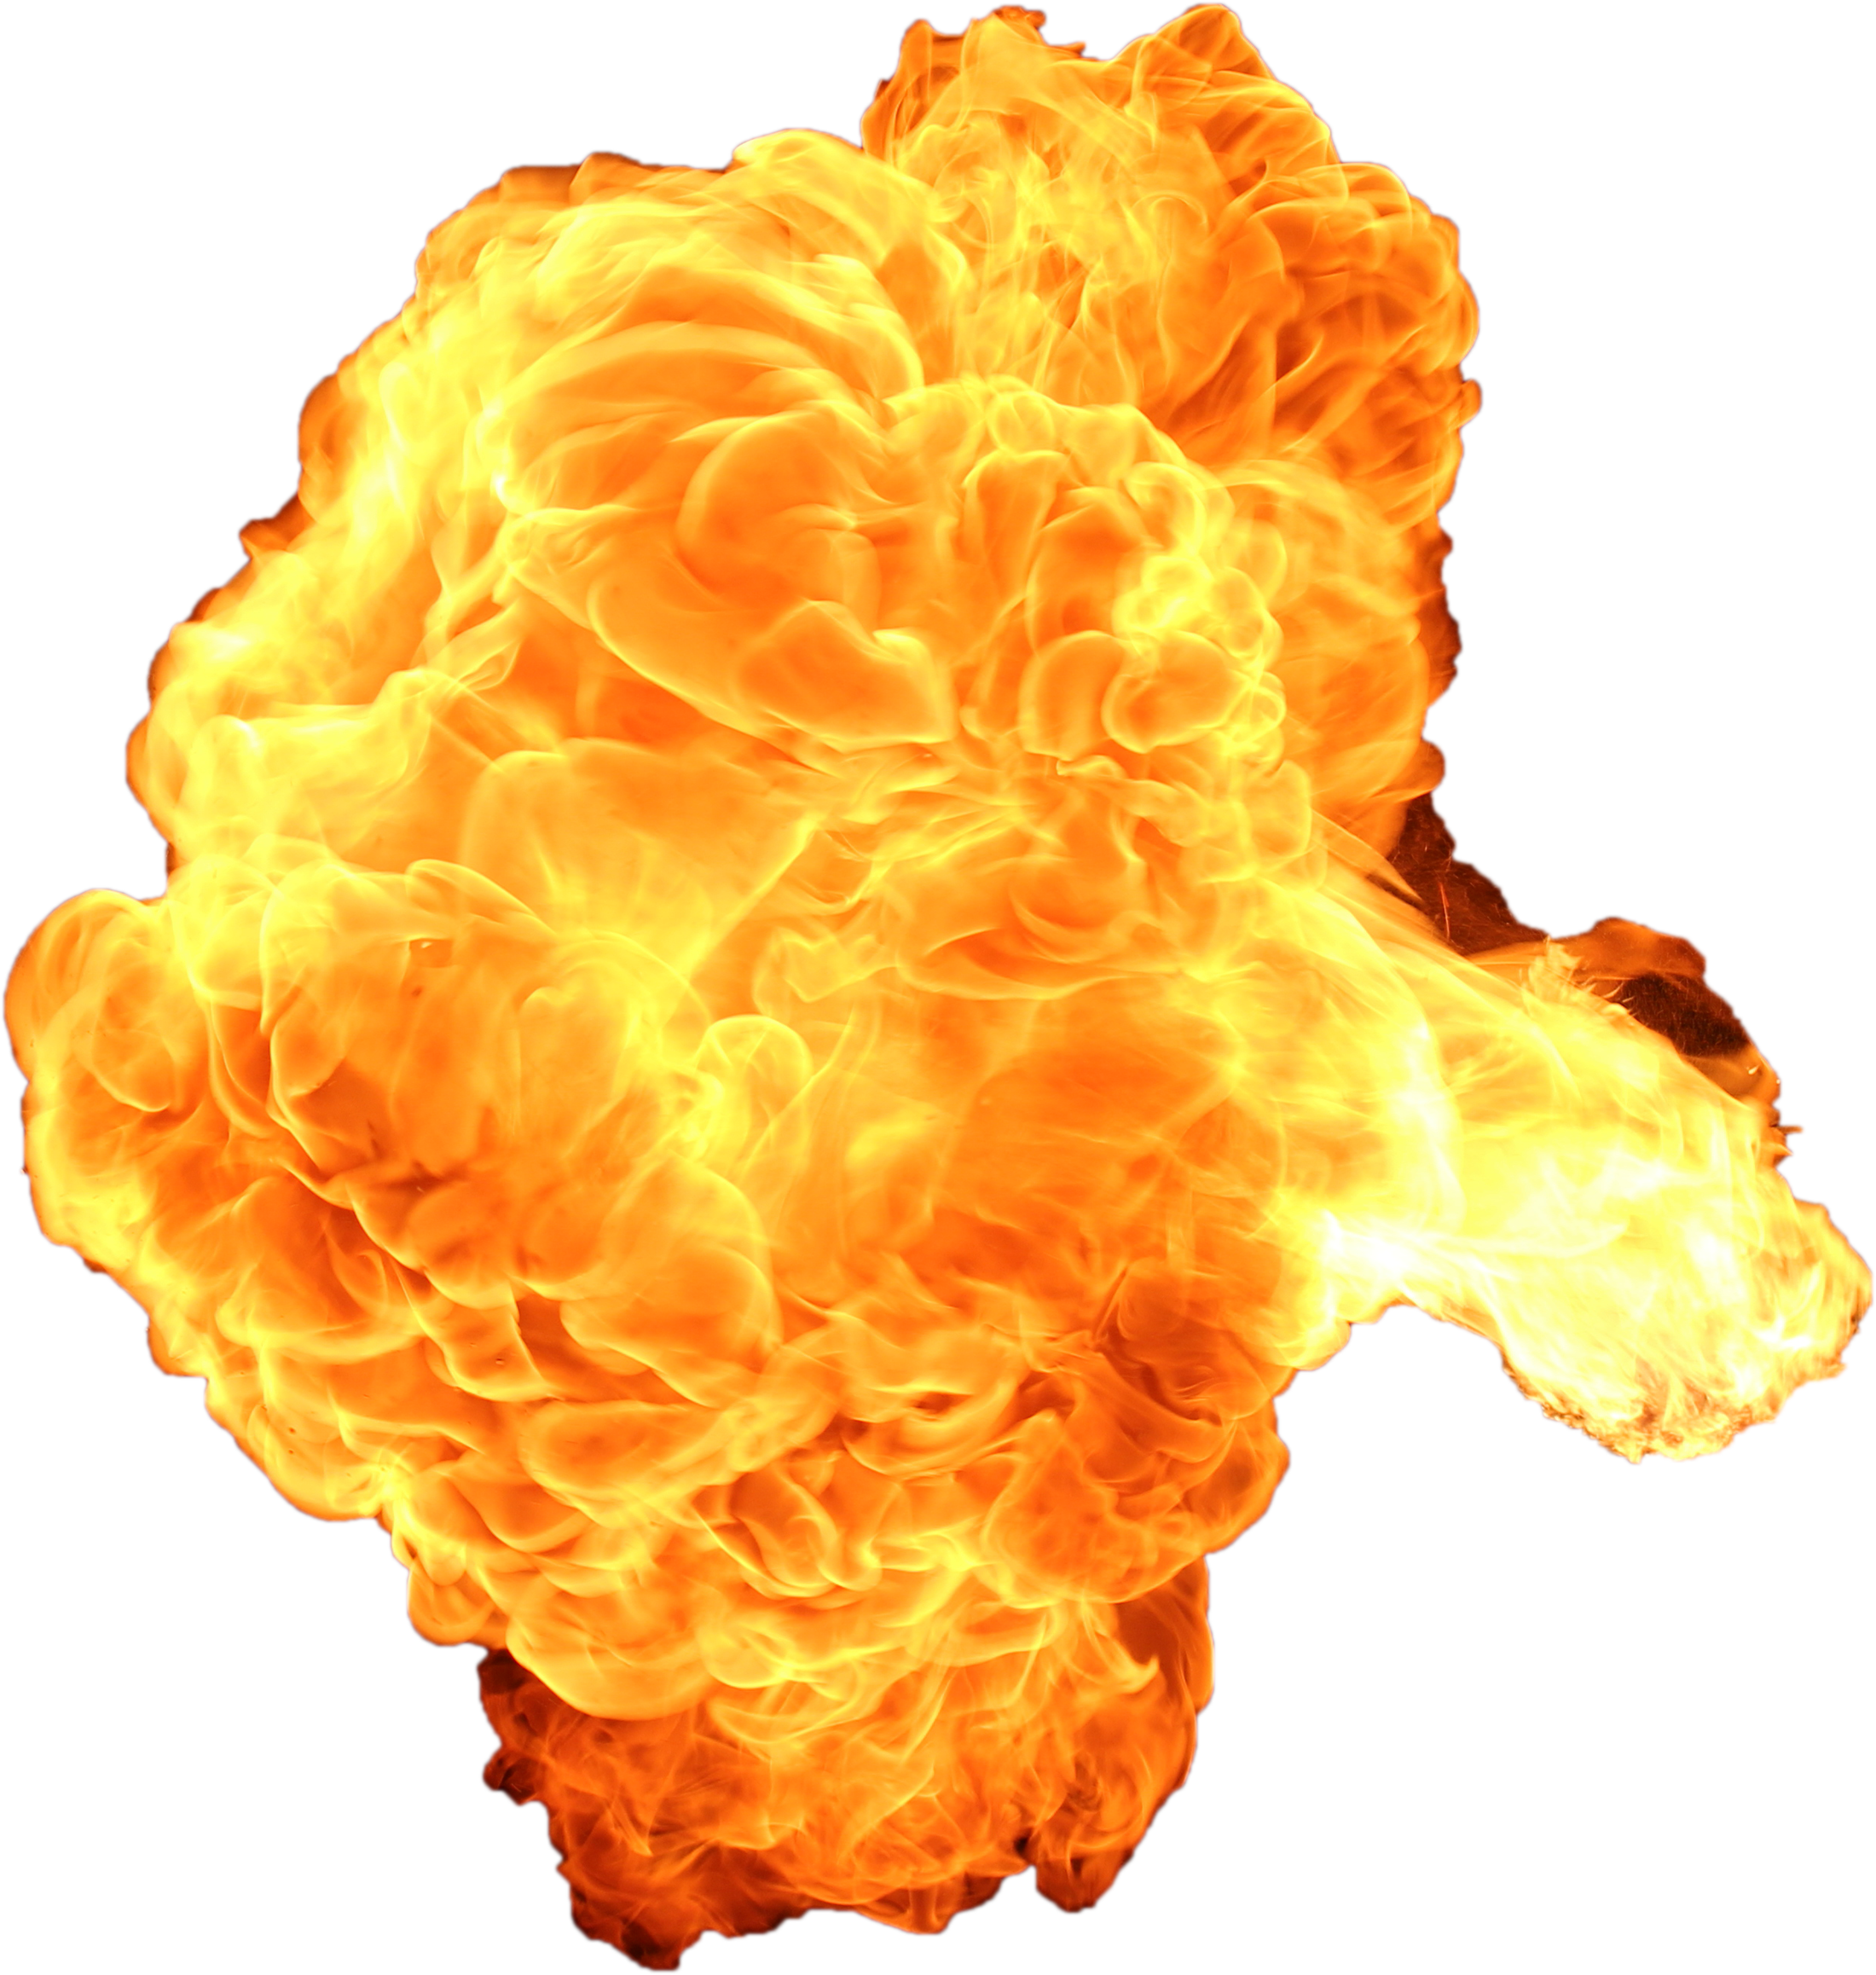 Fire Explosion PNG Gambar Transparan